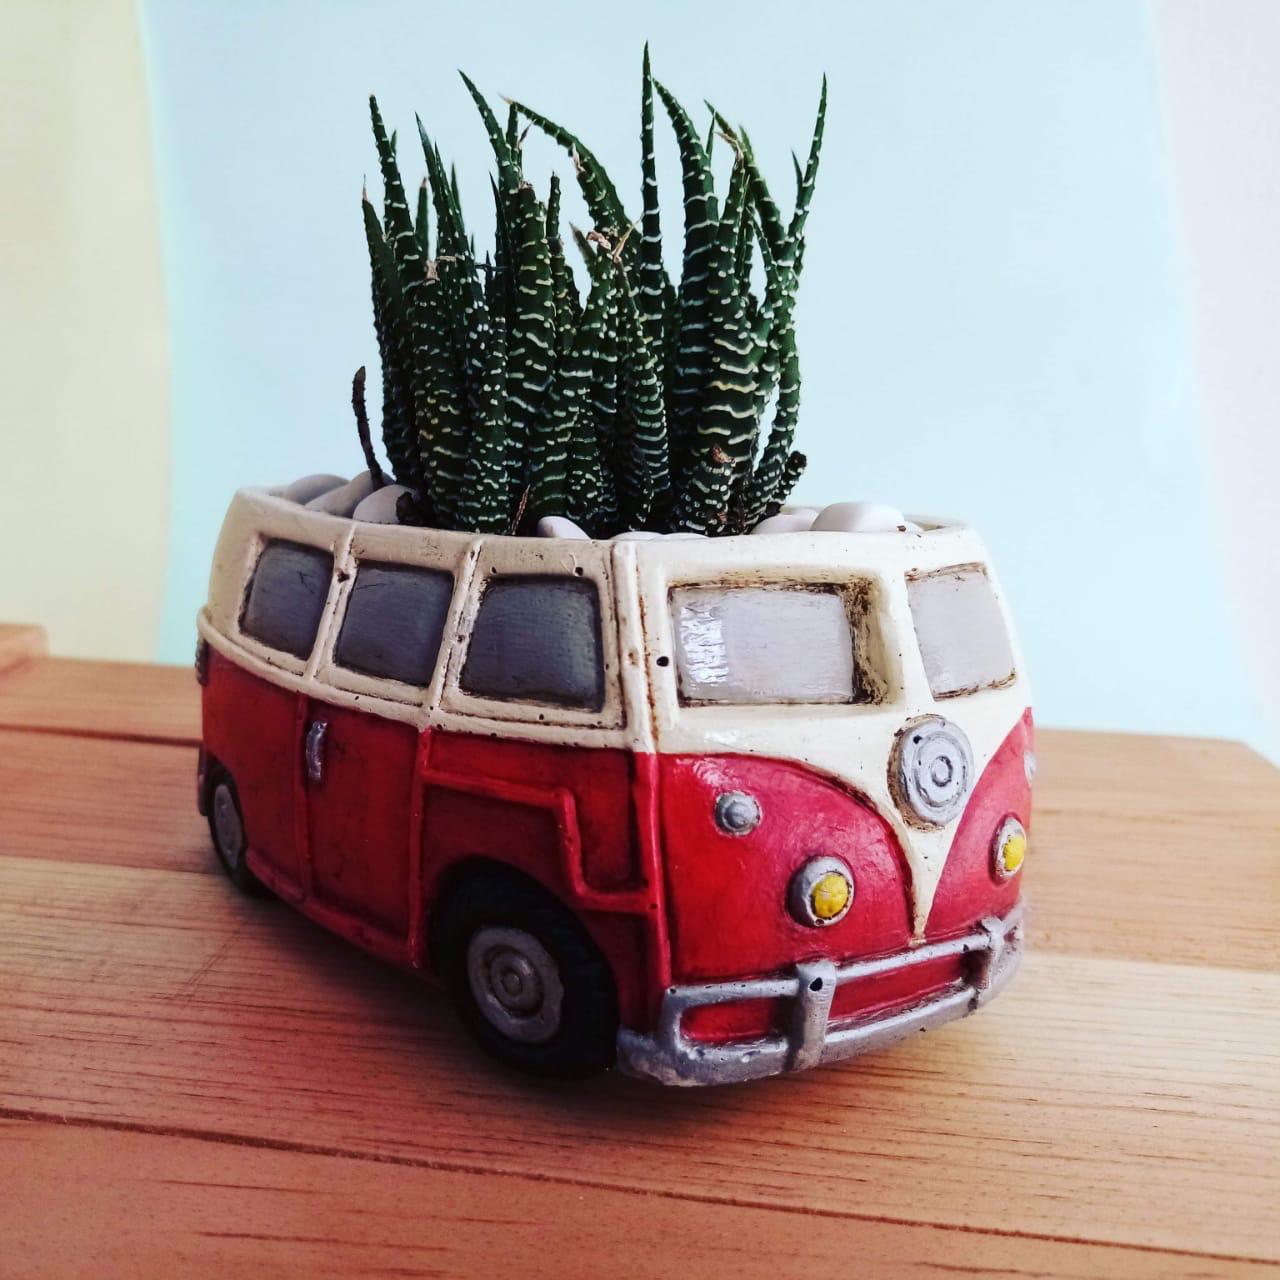 Ocupo Uno - Regalos Retro on Twitter: "Macetas para cactus o suculentas  Fabricadas en concreto y personalizadas. Entregas a domicilio en ZMG  Info@ocupo.uno @TeloVendoGDL #combiretro #combi #maceta #suculenta #vw  #vwmaceta #vwcombivan #suculindas #